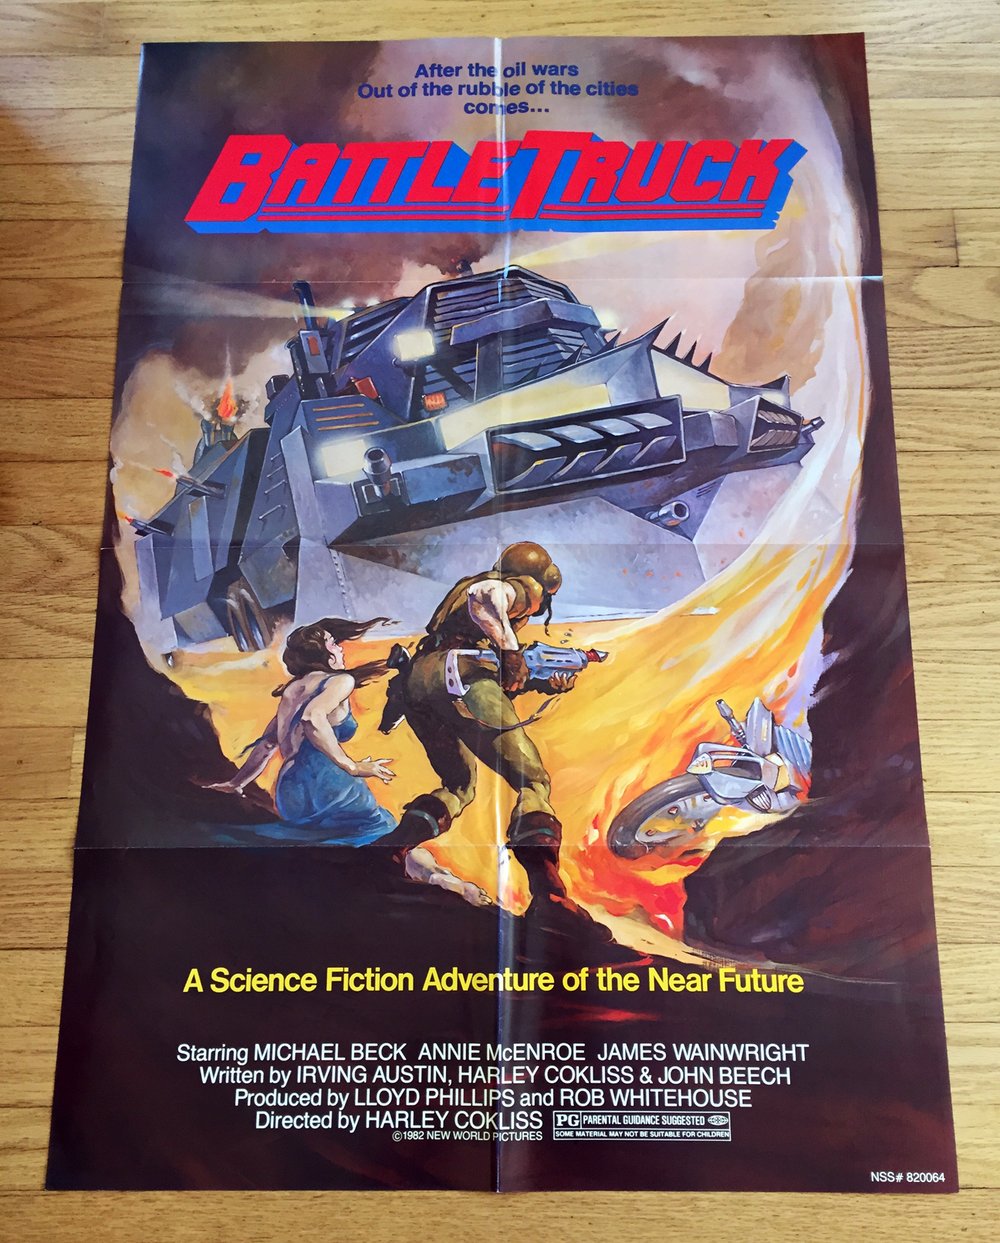 1982 BATTLETRUCK Original U.S. One Sheet Movie Poster